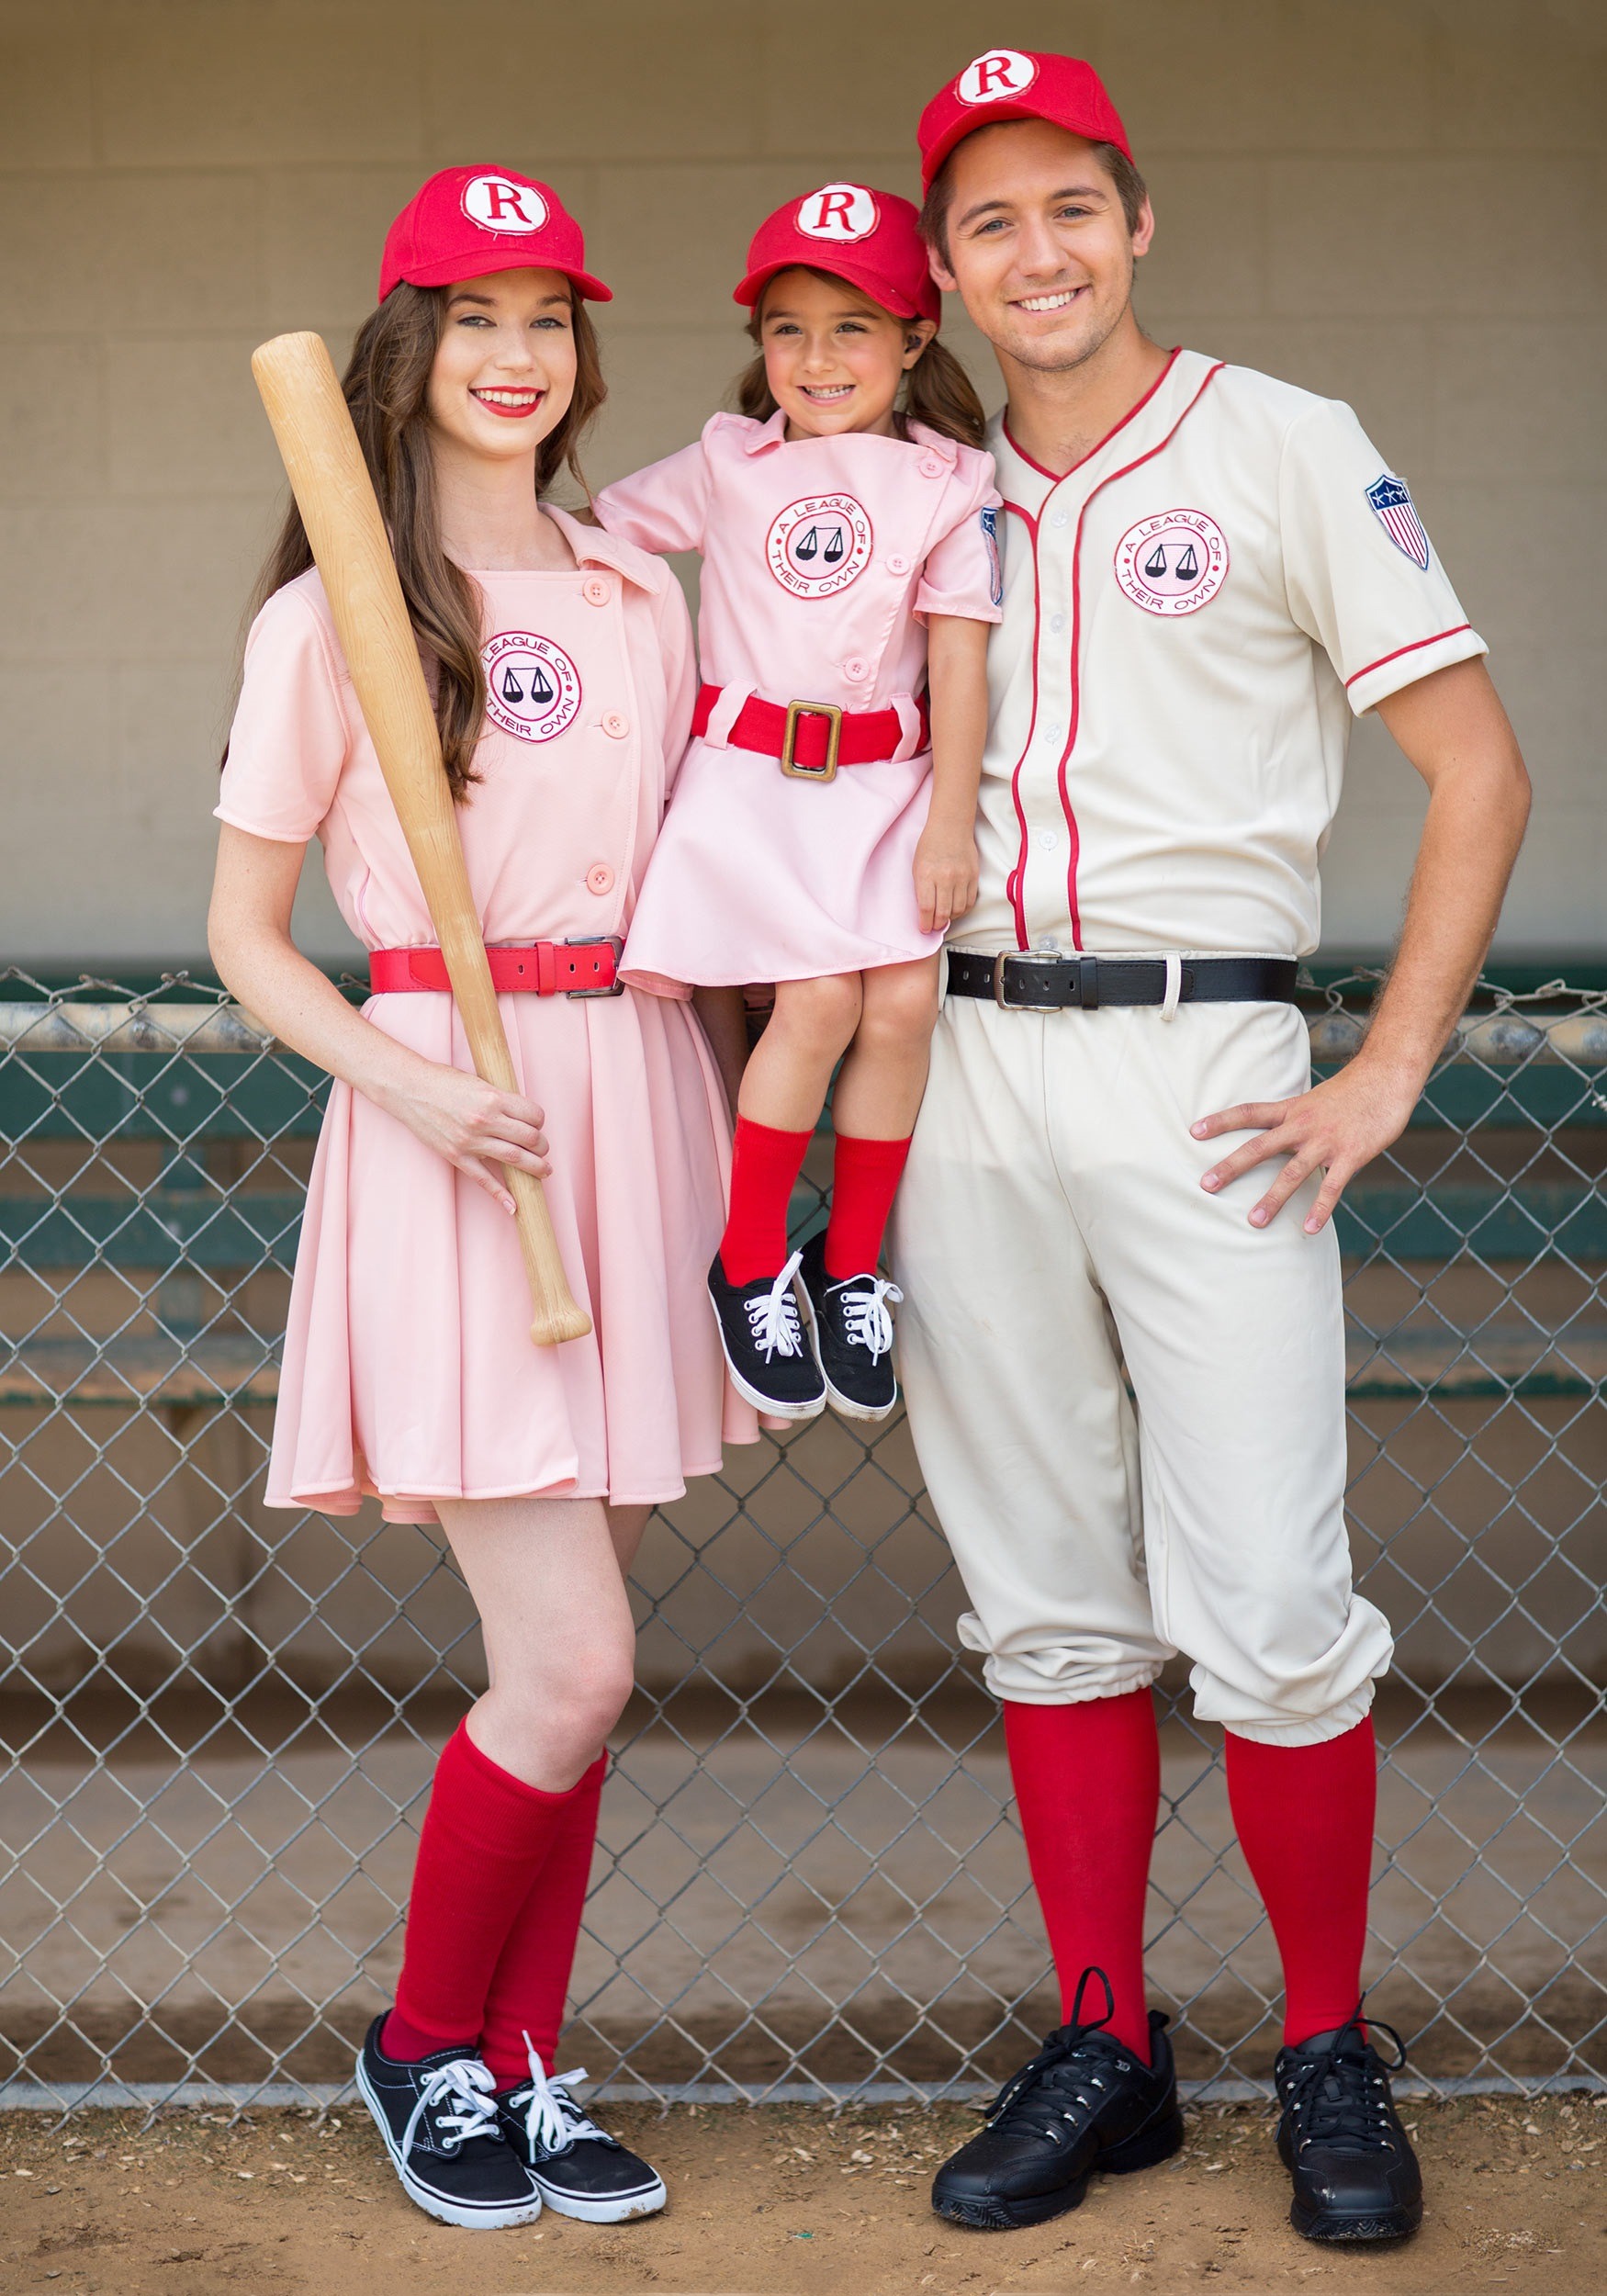 A League Of Their Own Rockford Peaches Baseball Uniform Costume Womens sz M...